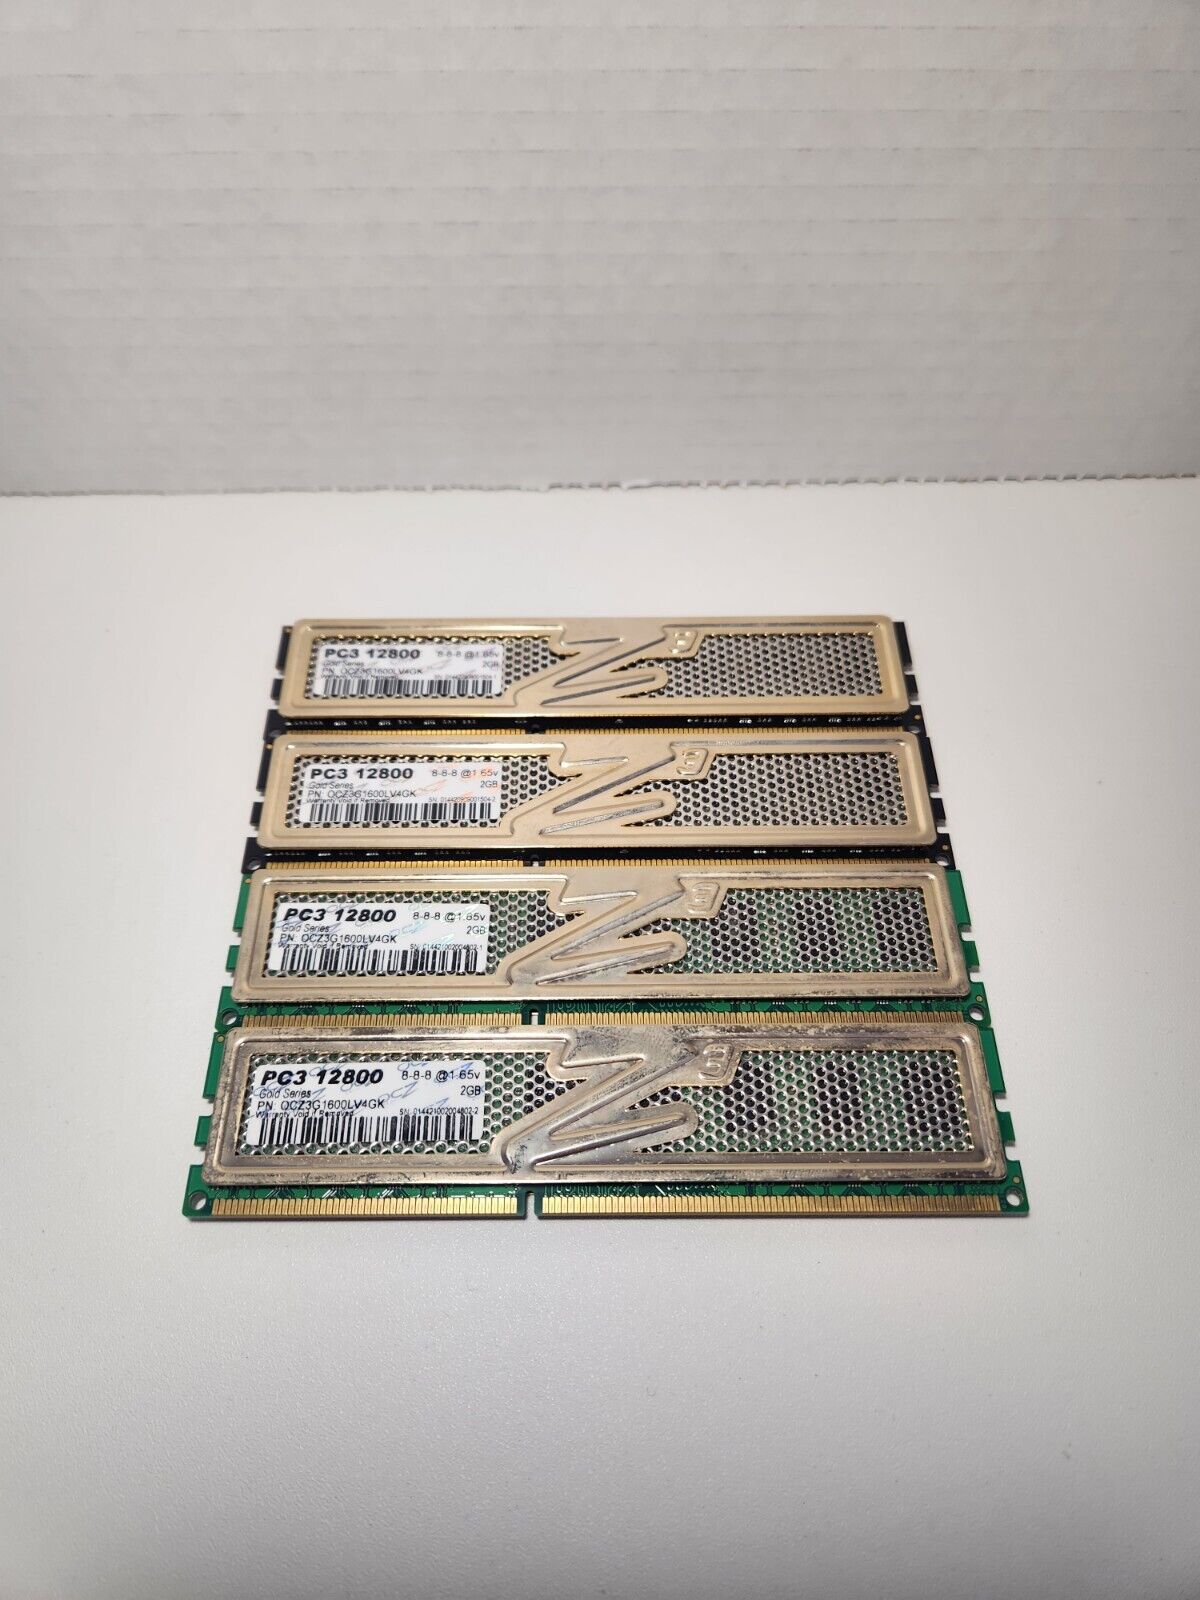 Lot of 4x2 (8GB) OCZ Technology OCZ3G1600LV4GK 2 GB PC3-12800 1600MHz DDR3 SDRAM